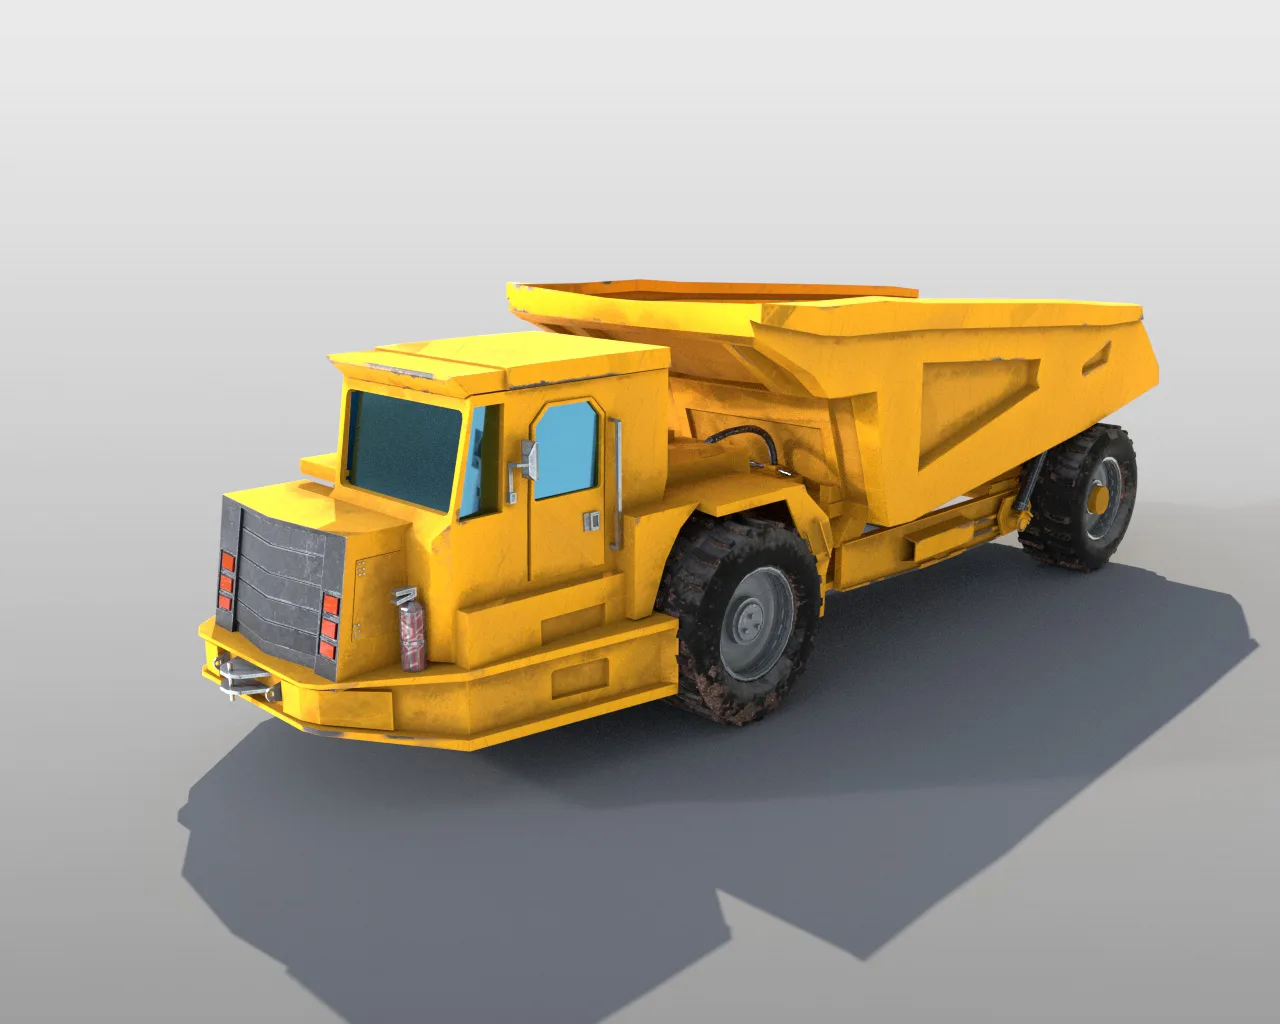 Underground mining truck 3d model